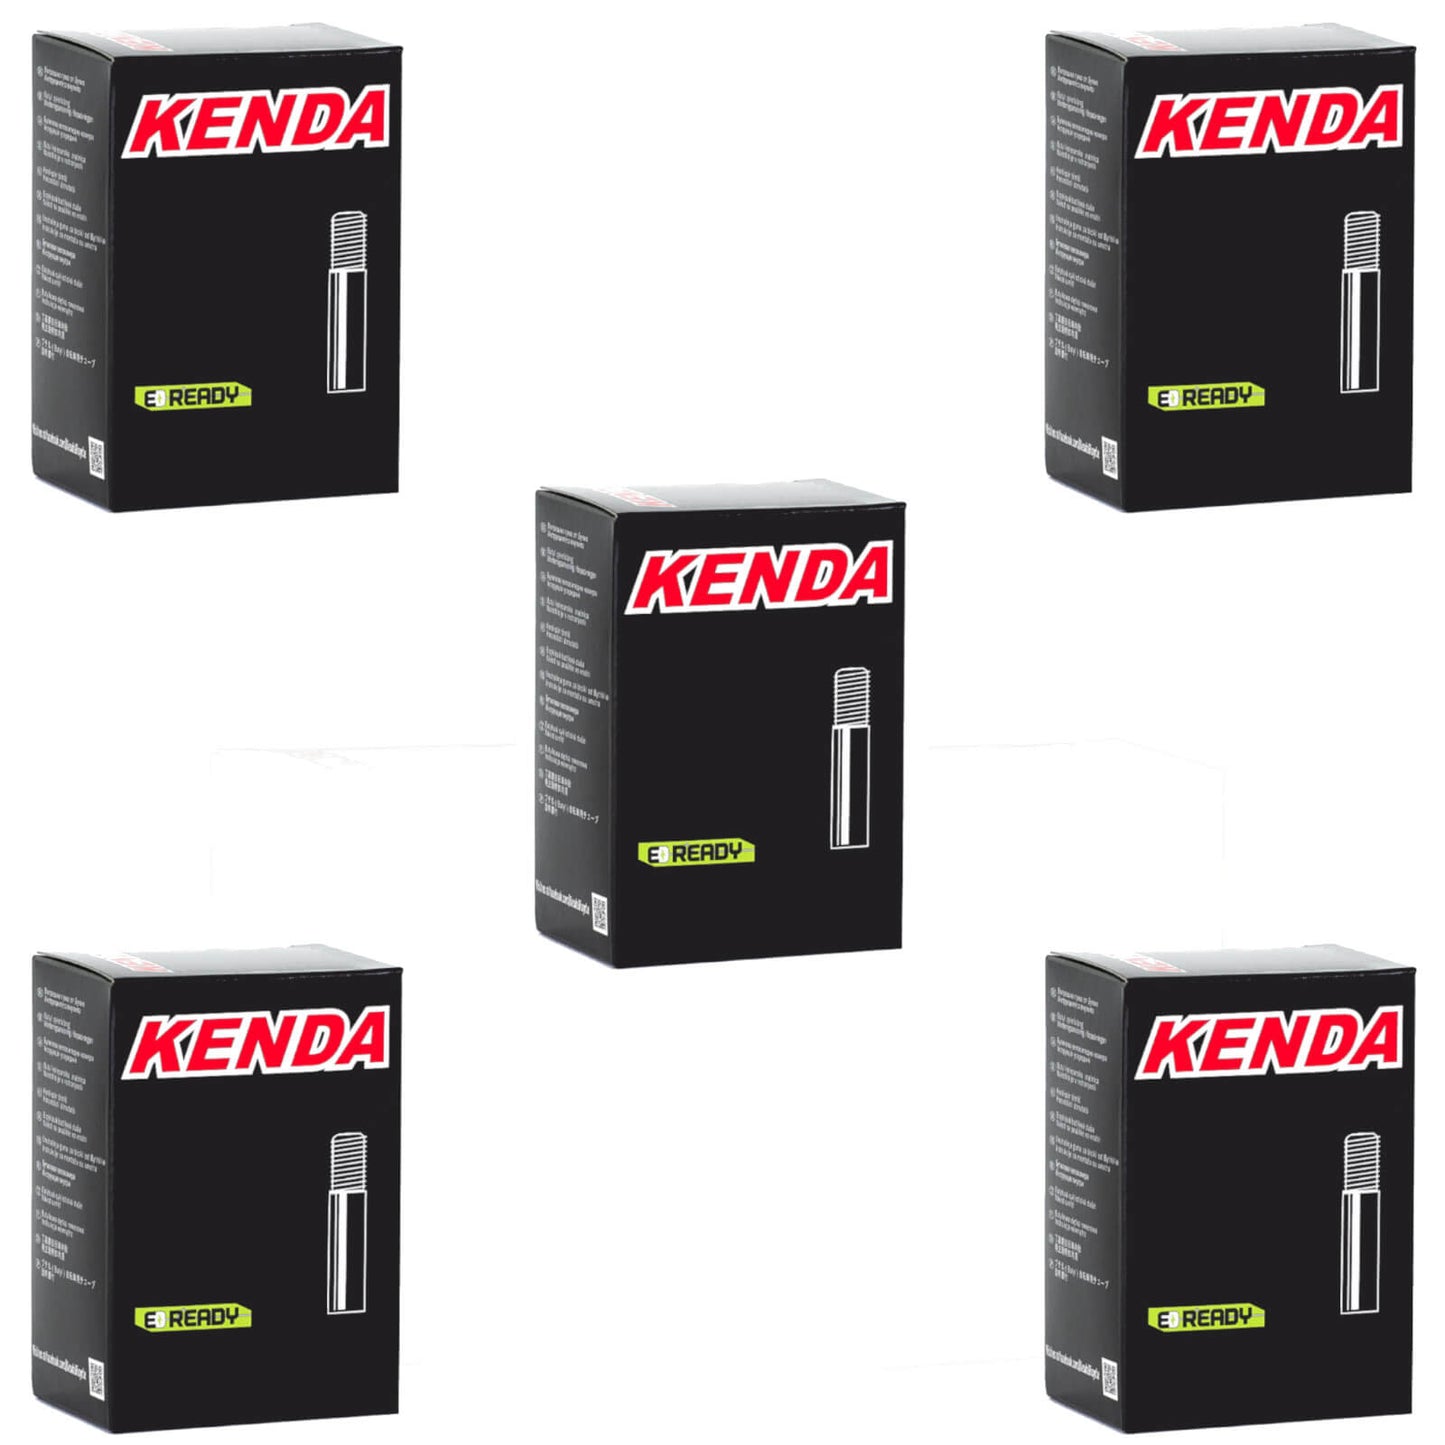 Kenda 26x1.0-1.5" 26 Inch Schrader Valve Bike Inner Tube Pack of 5